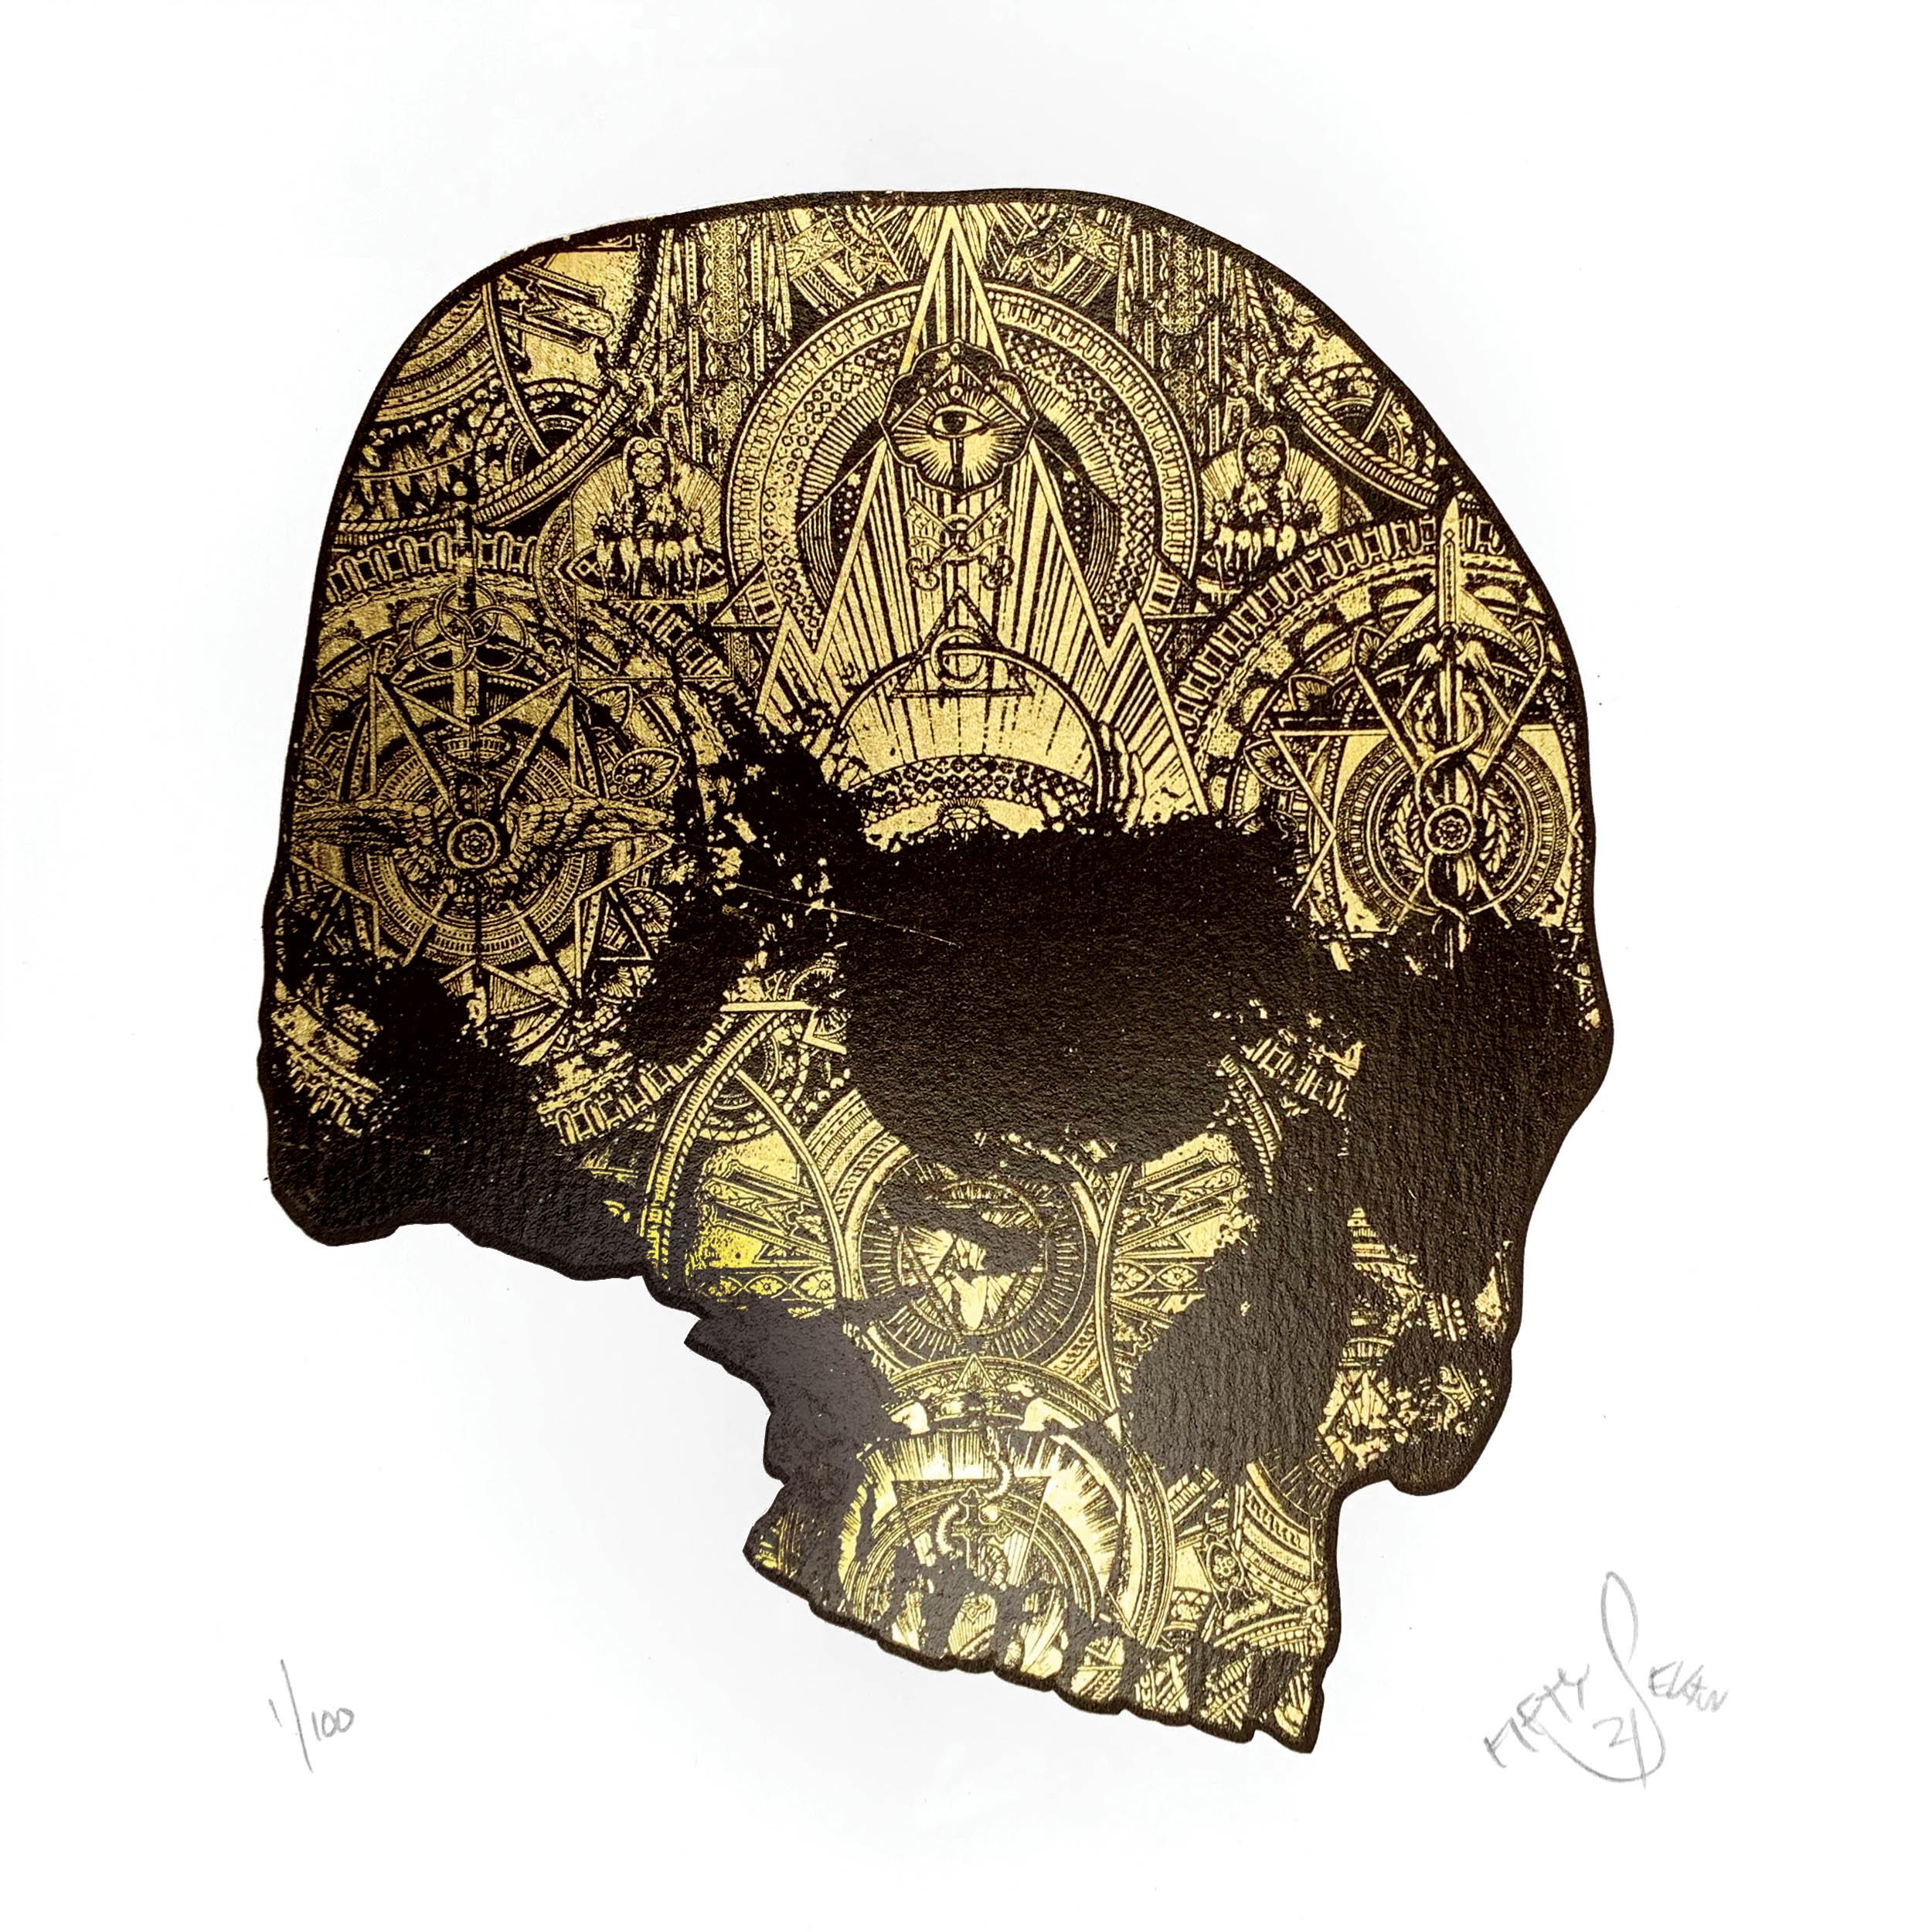 The Golden skull